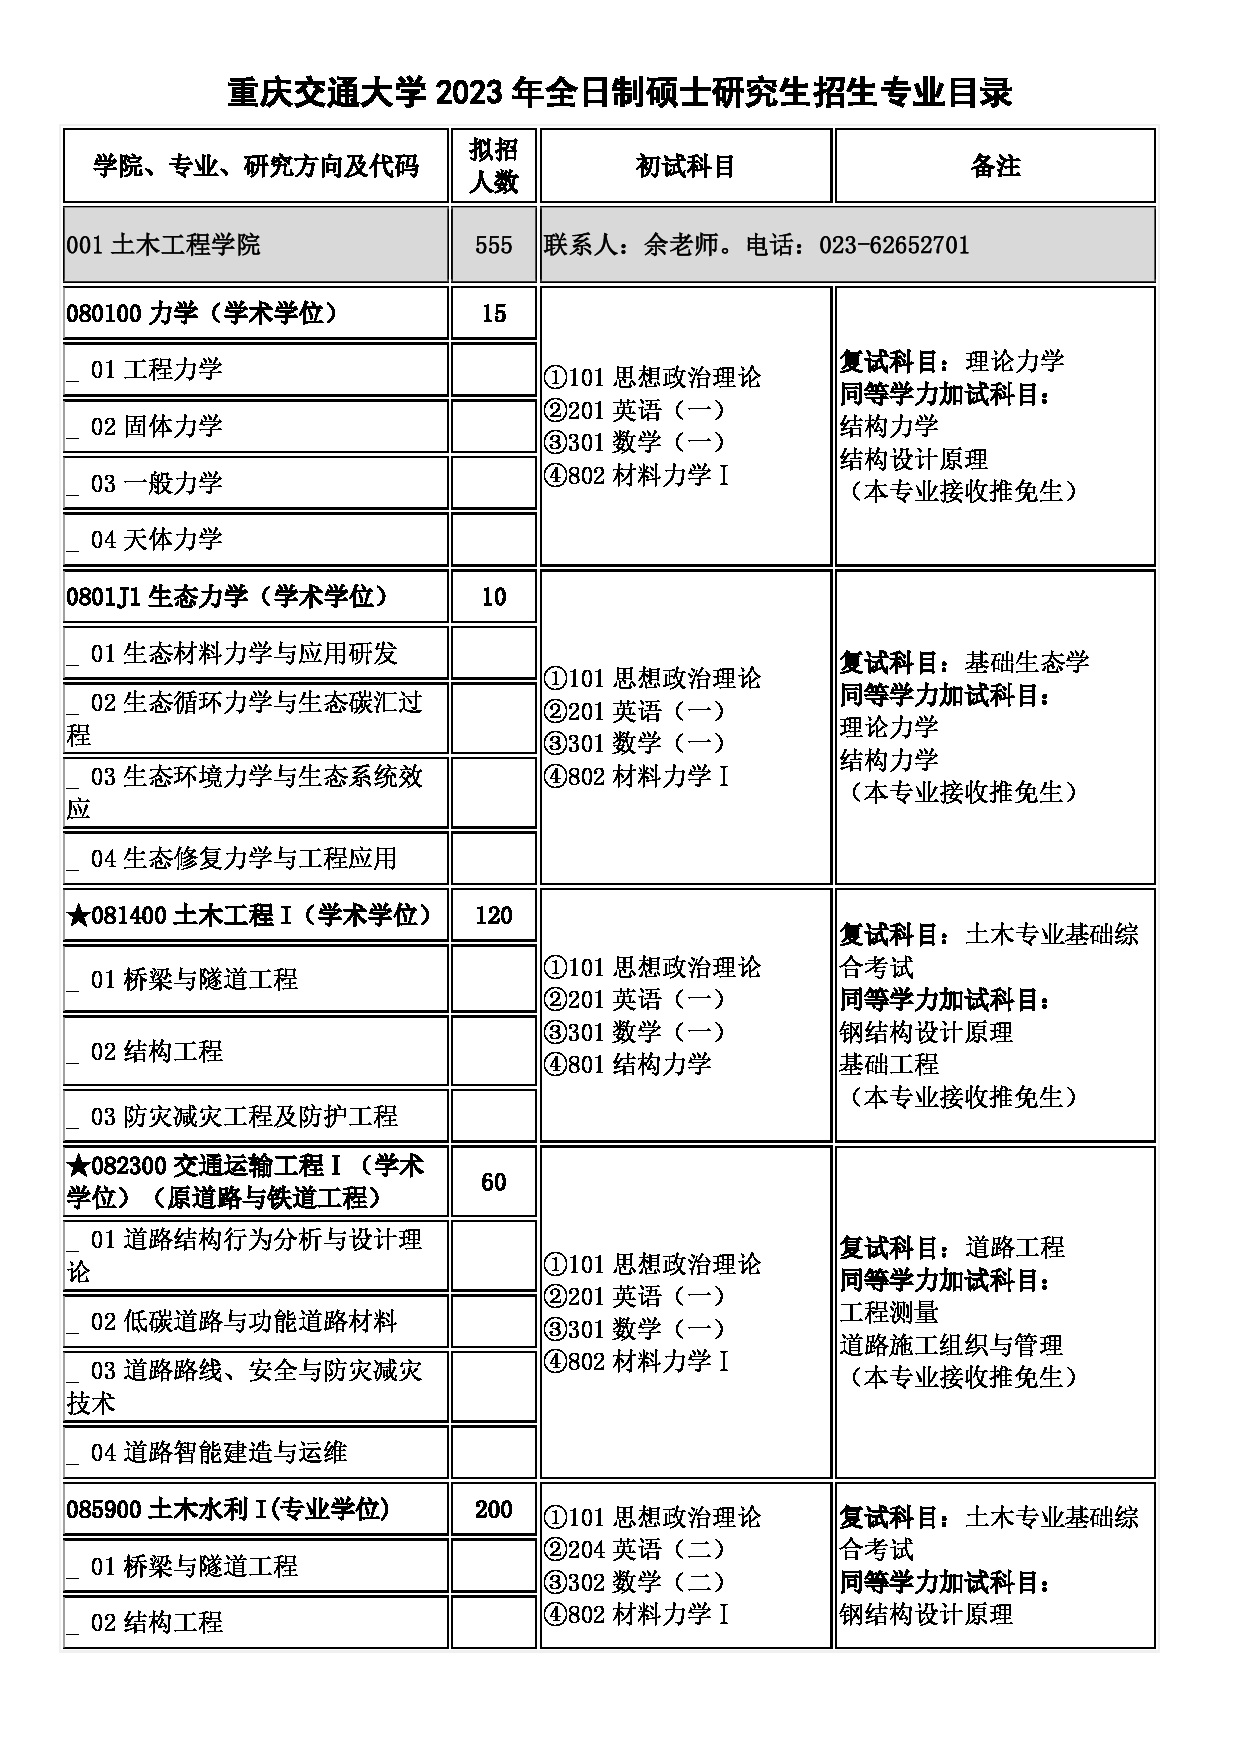 2023招生目录:重庆交通大学2023年硕士研究生招生目录第1页